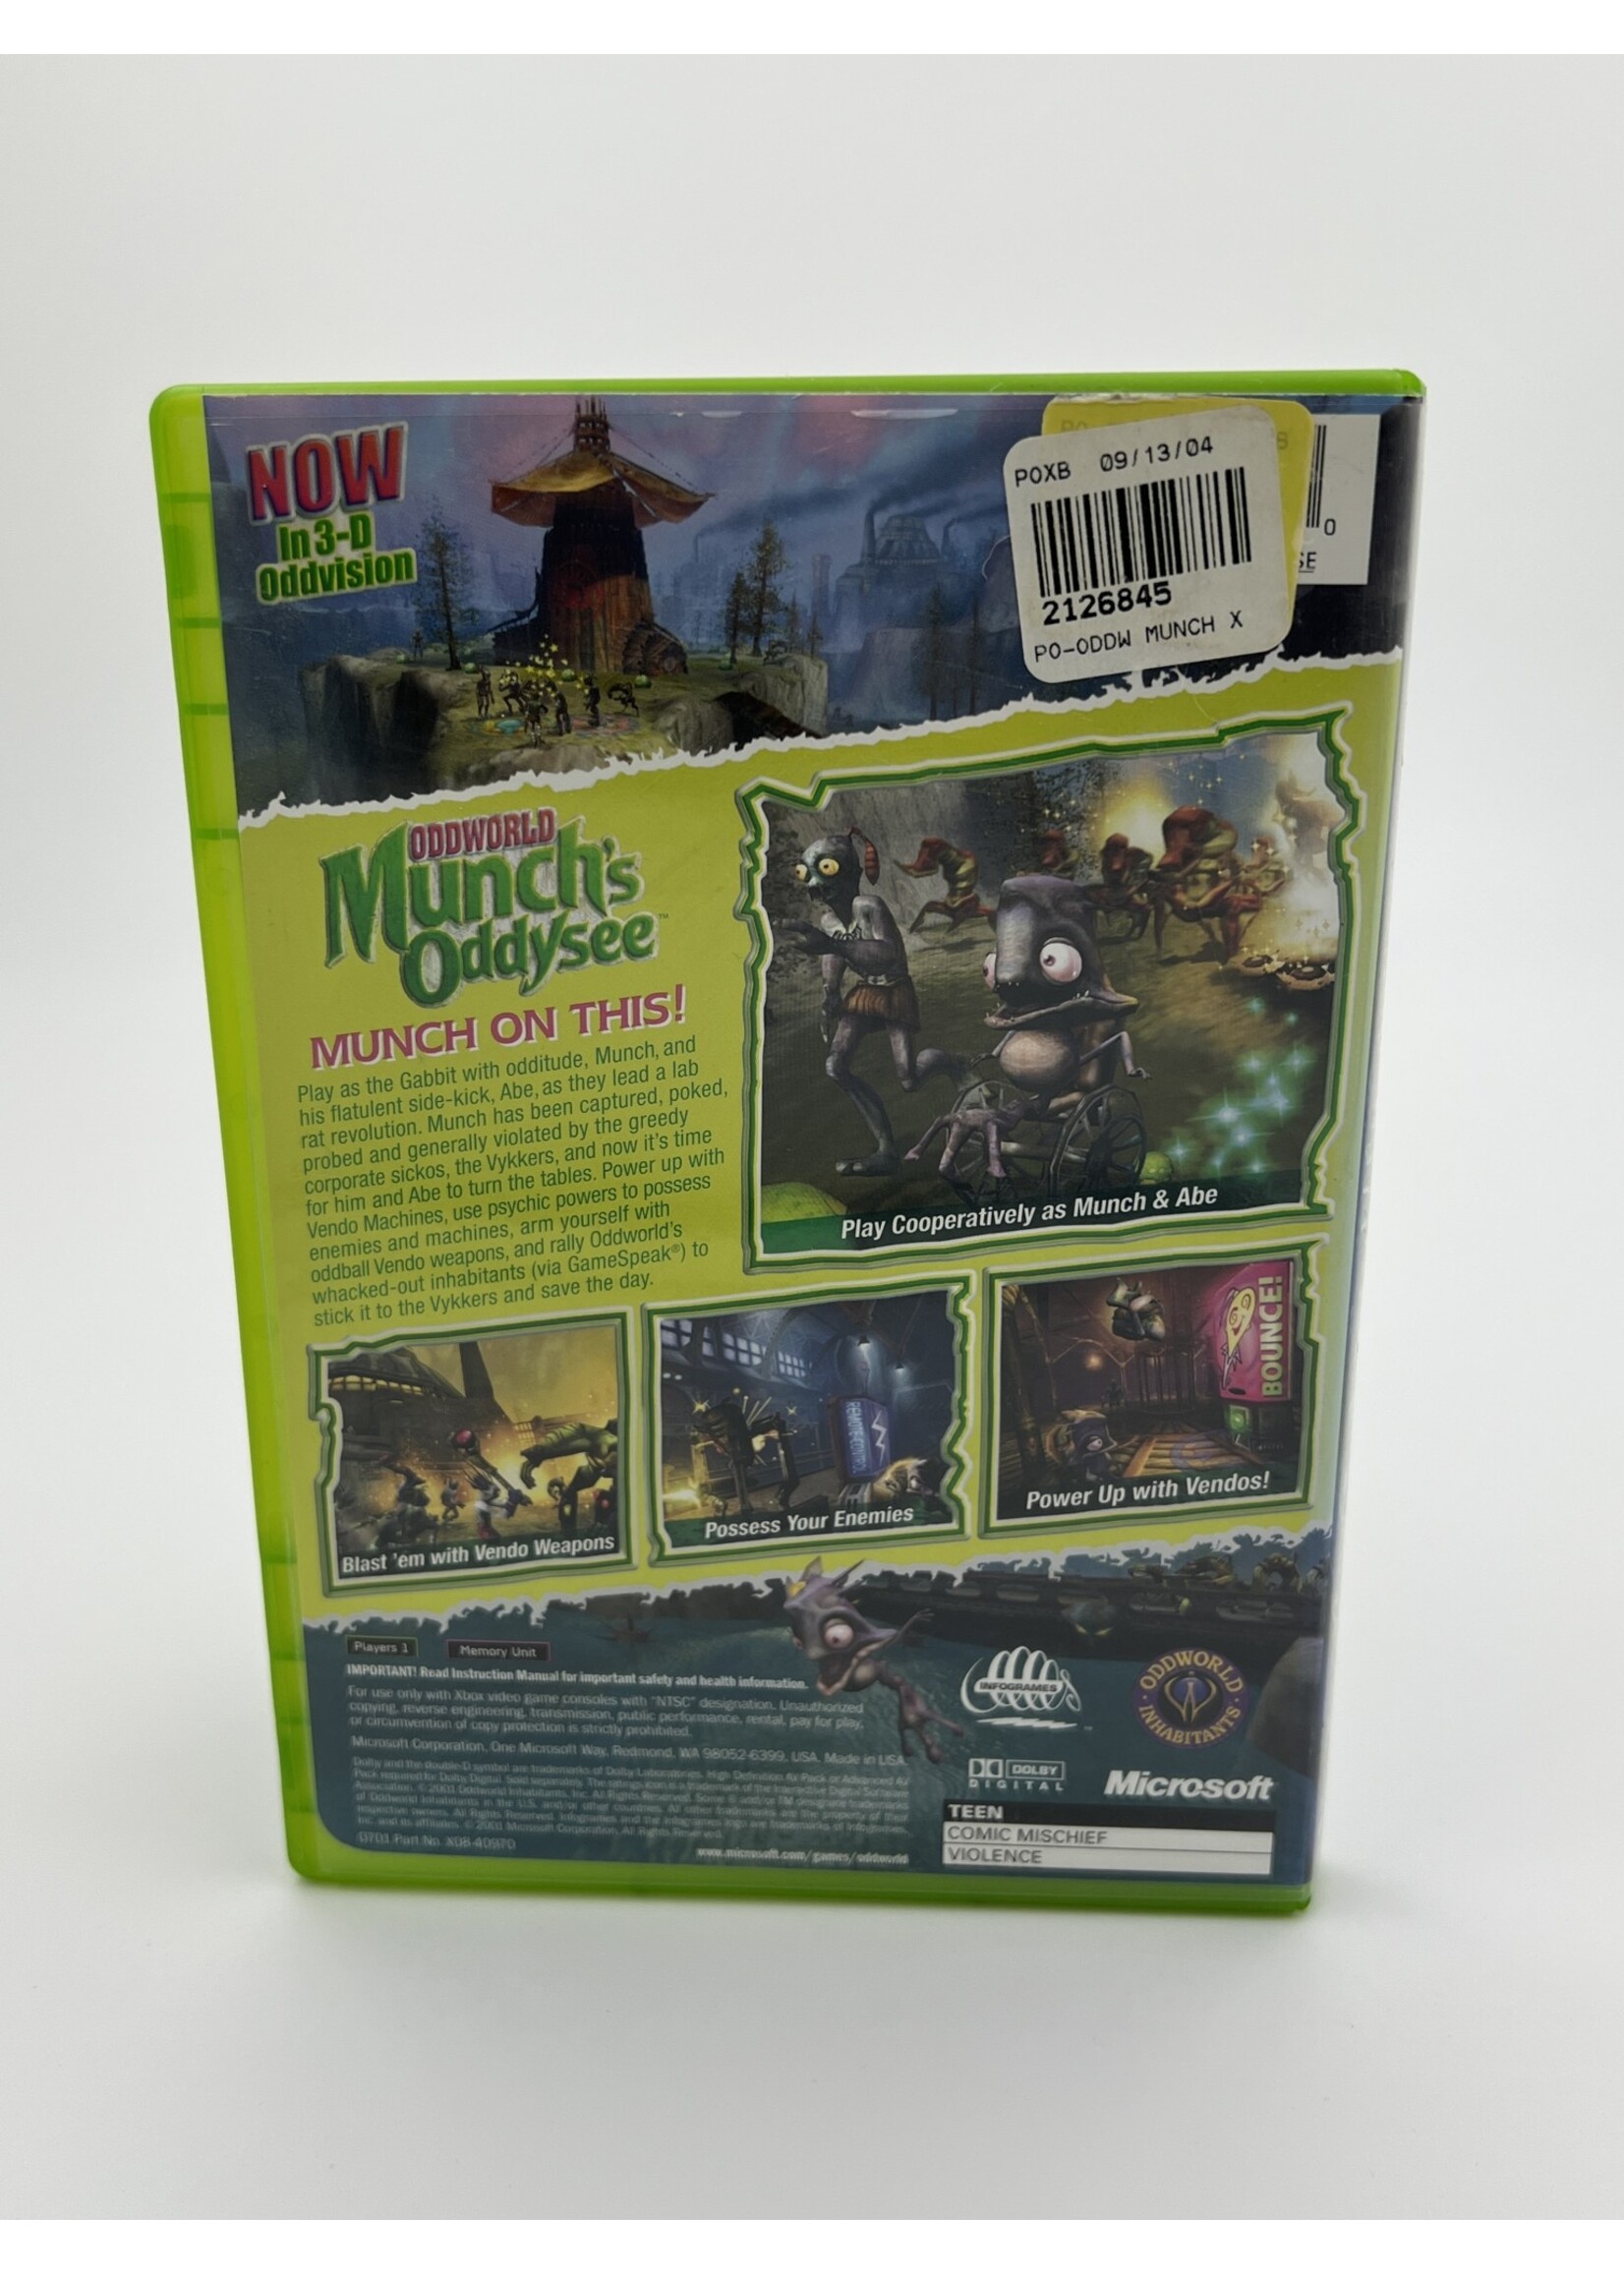 Xbox Oddworld Munchs Oddysee Xbox